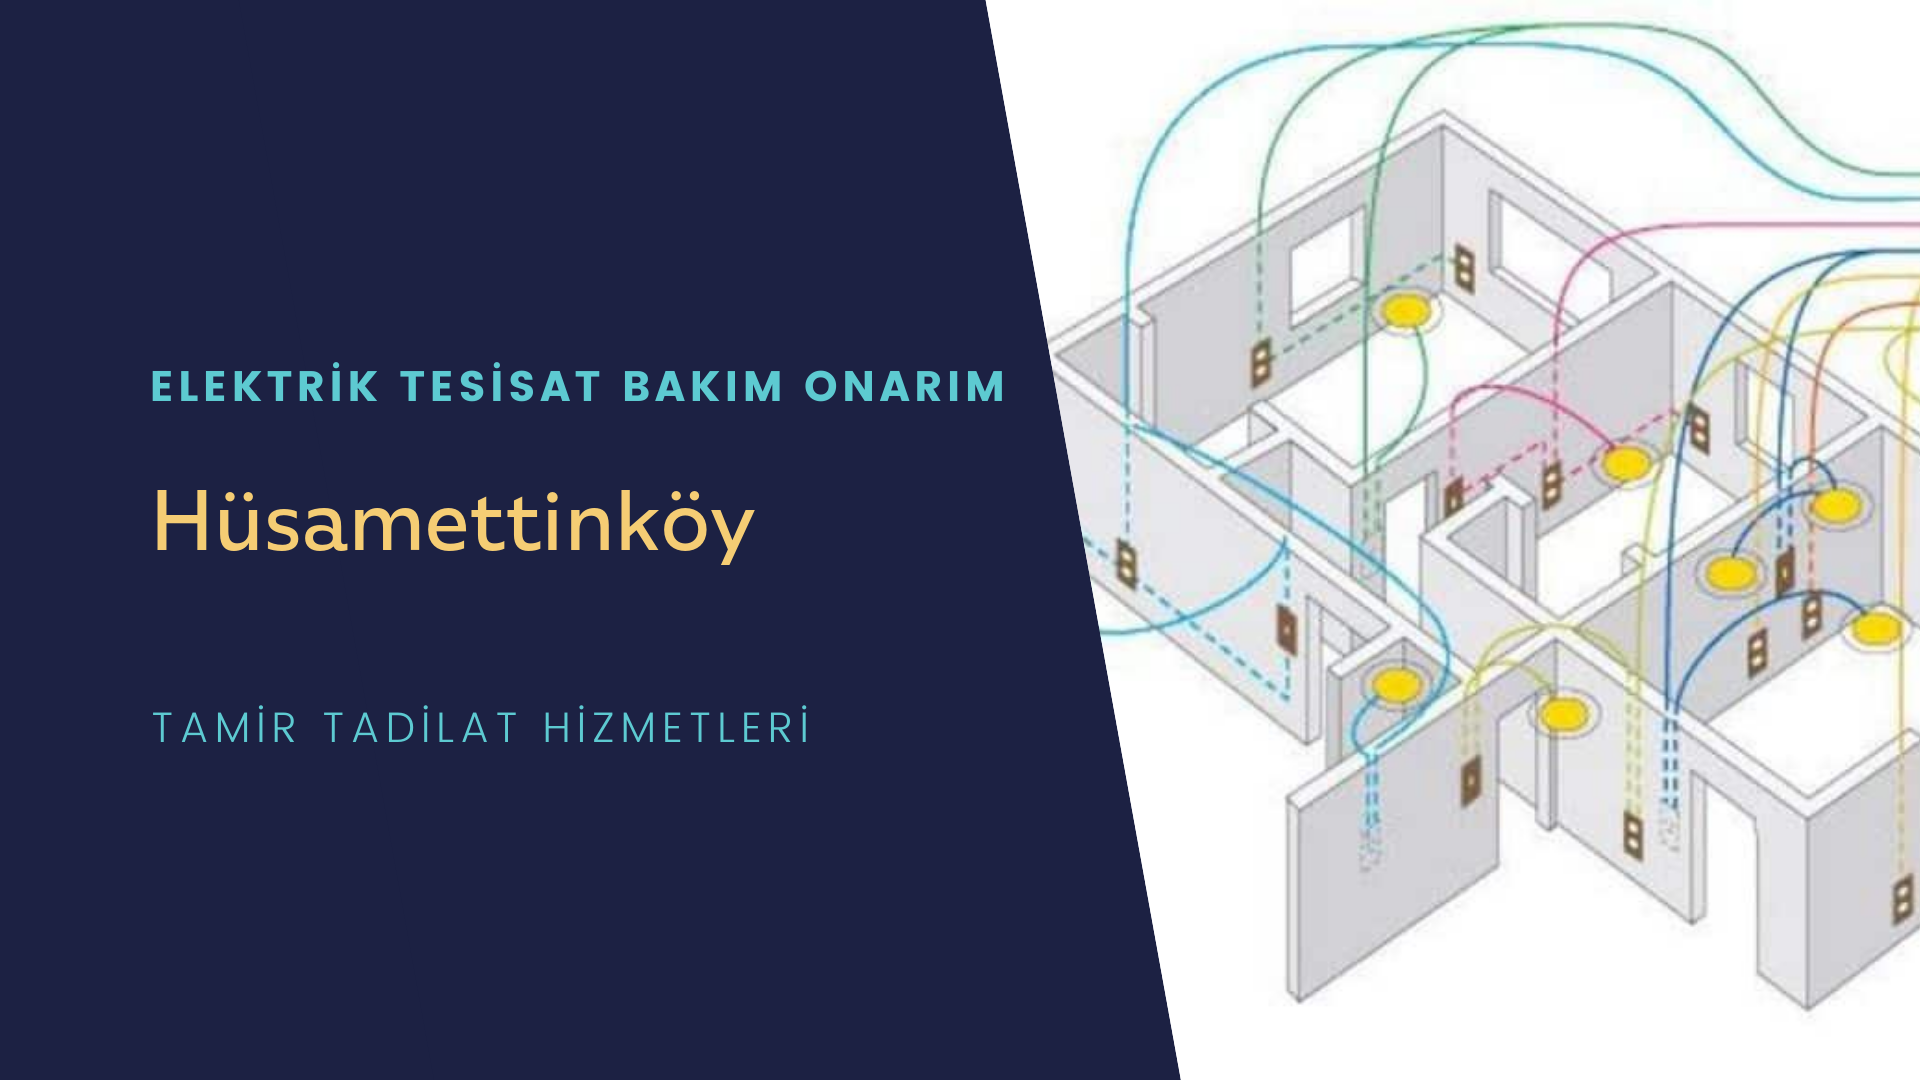 Hüsamettinköy'de elektrik tesisatı ustalarımı arıyorsunuz doğru adrestenizi Hüsamettinköy elektrik tesisatı ustalarımız 7/24 sizlere hizmet vermekten mutluluk duyar.